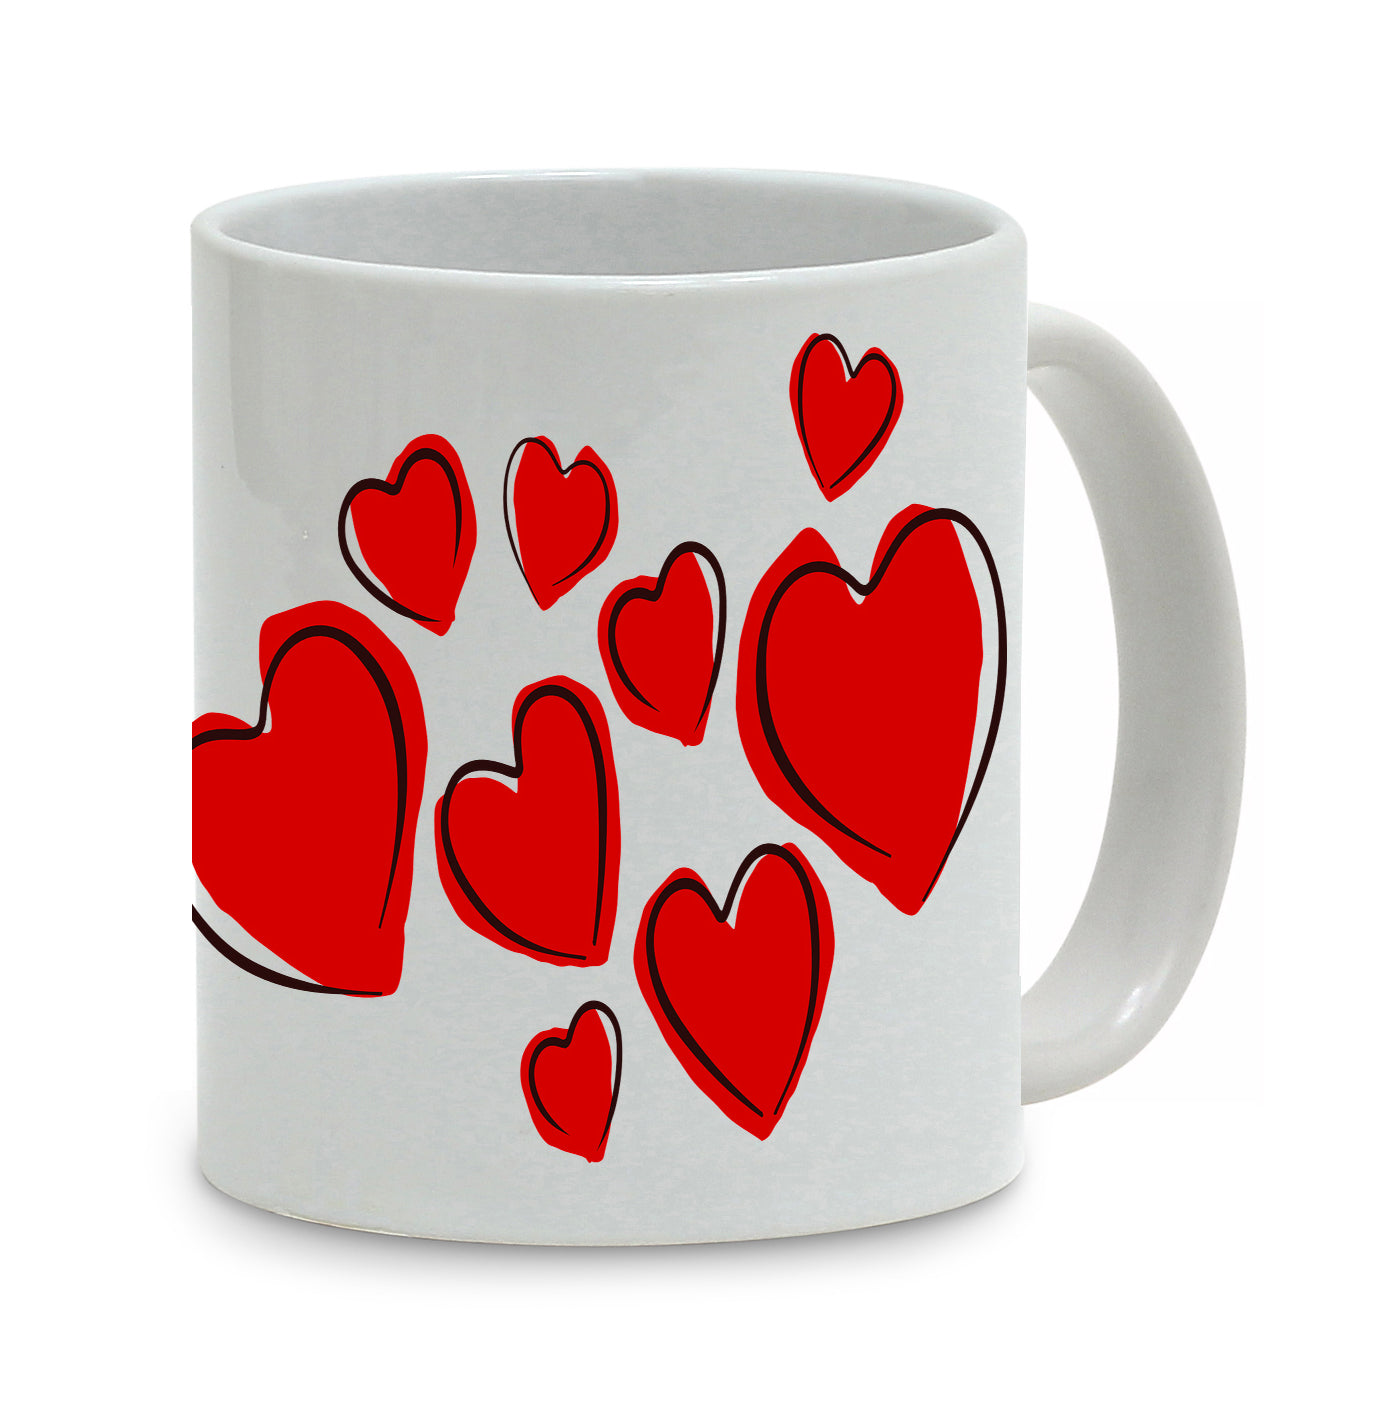 SUBLIMART: Love - Mug (Design 08) - Artistica.com